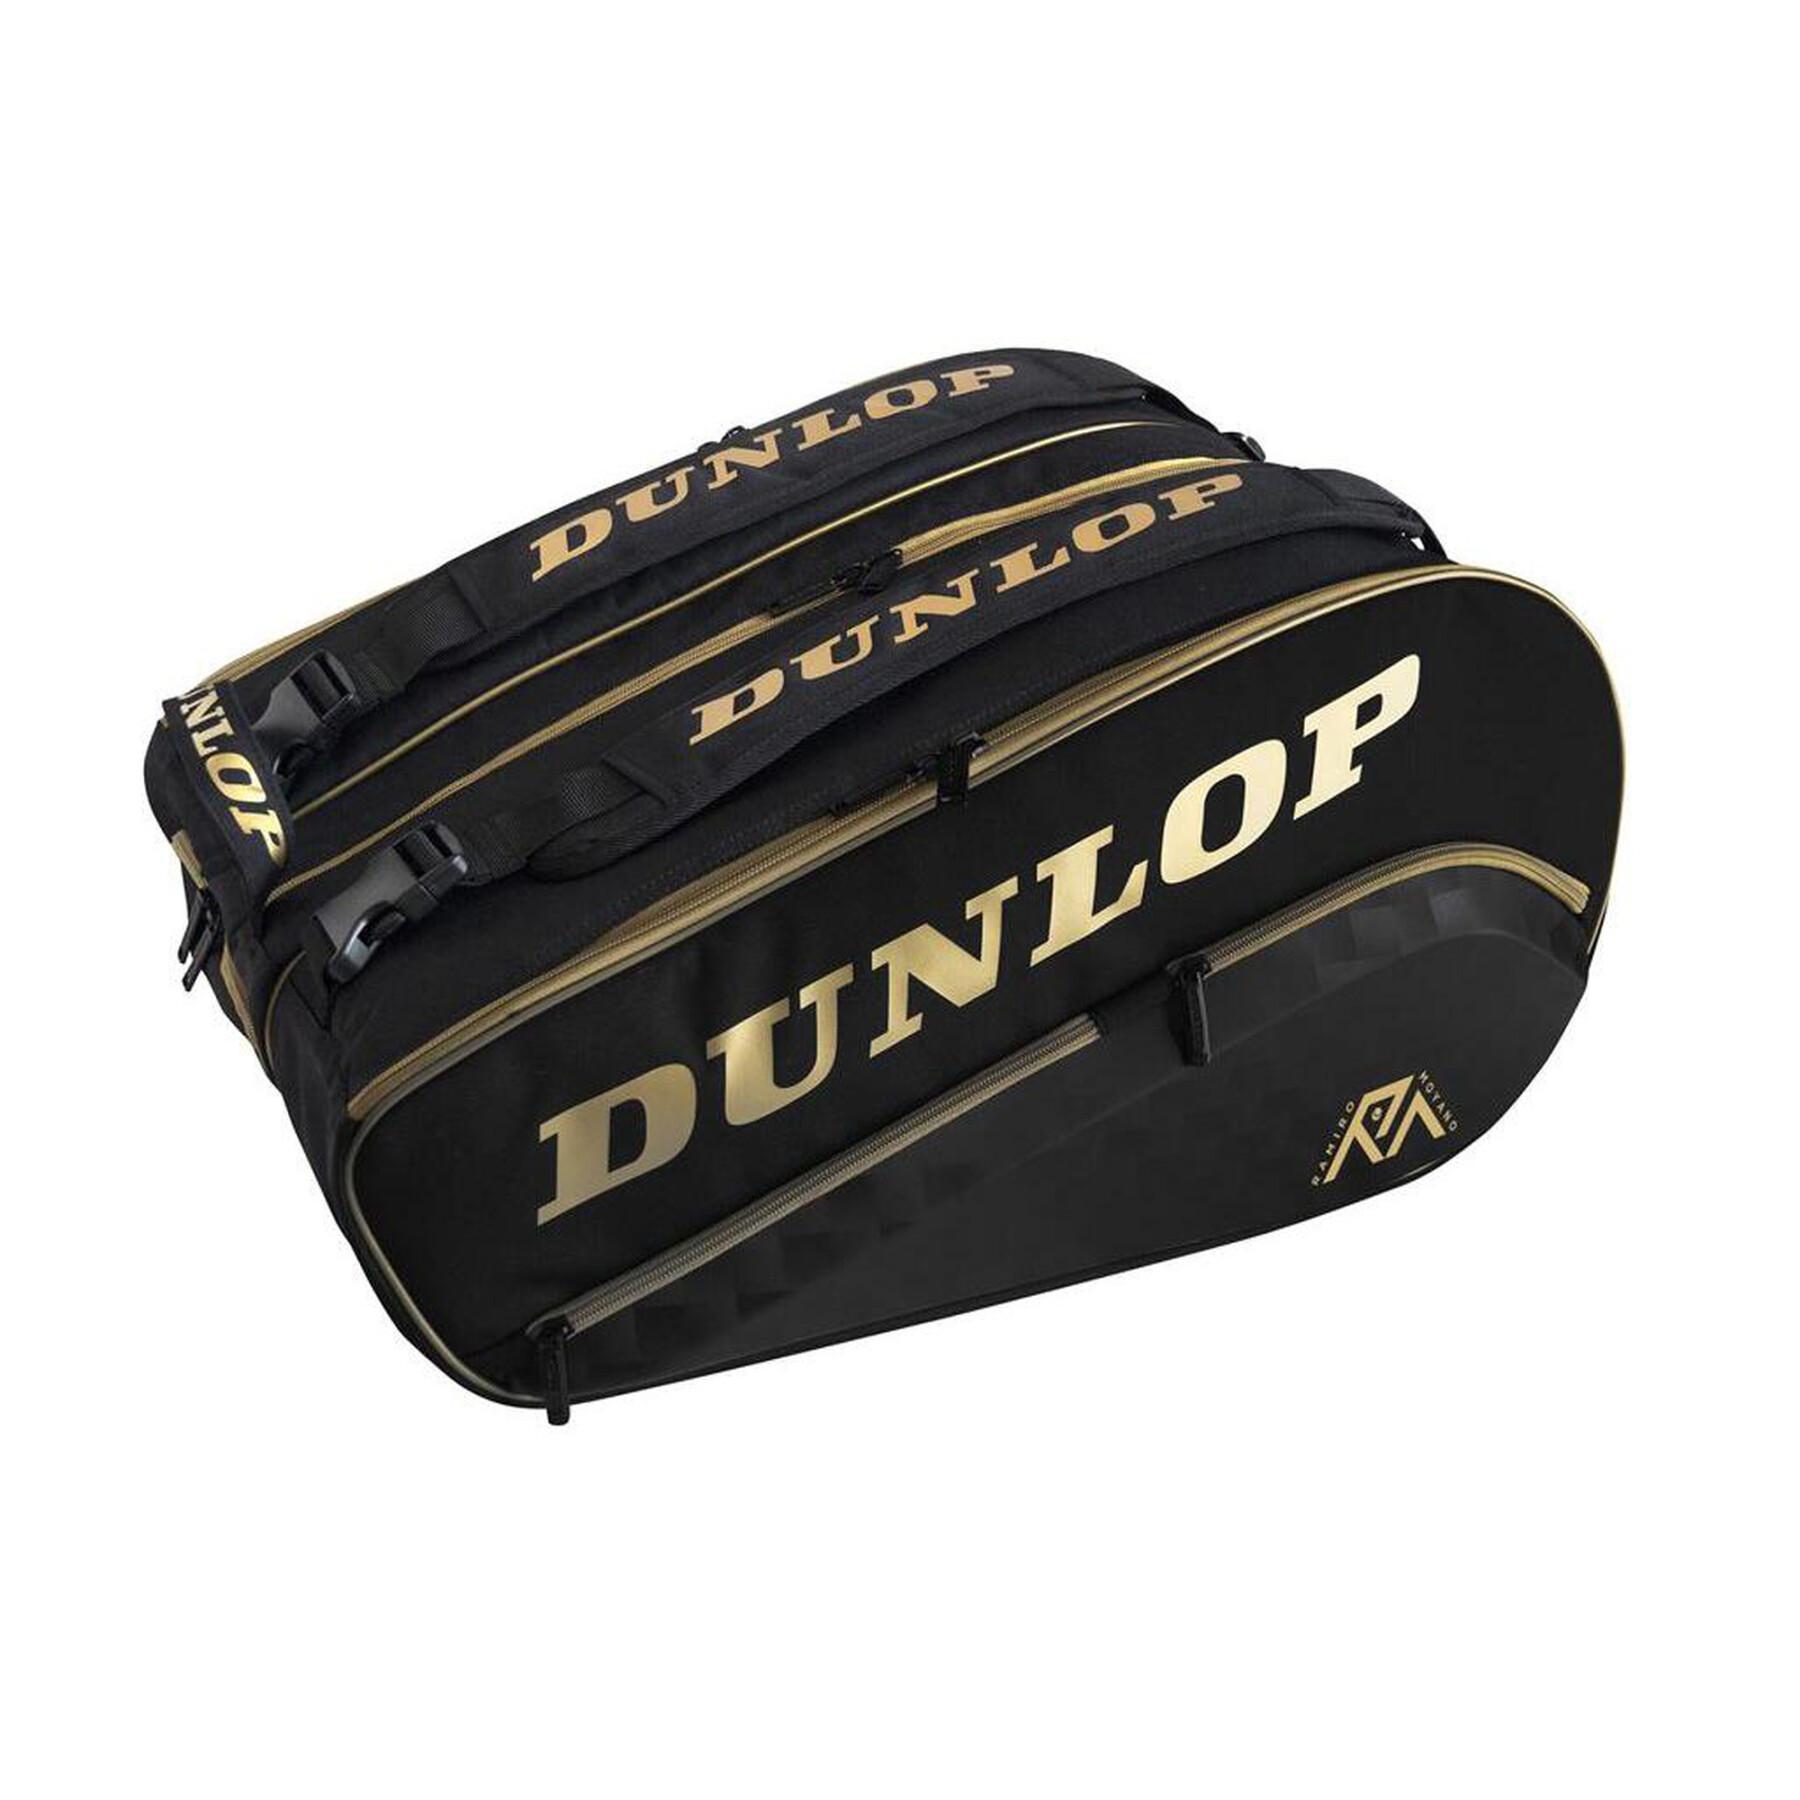 Racket bag from padel Dunlop Paletero Elite